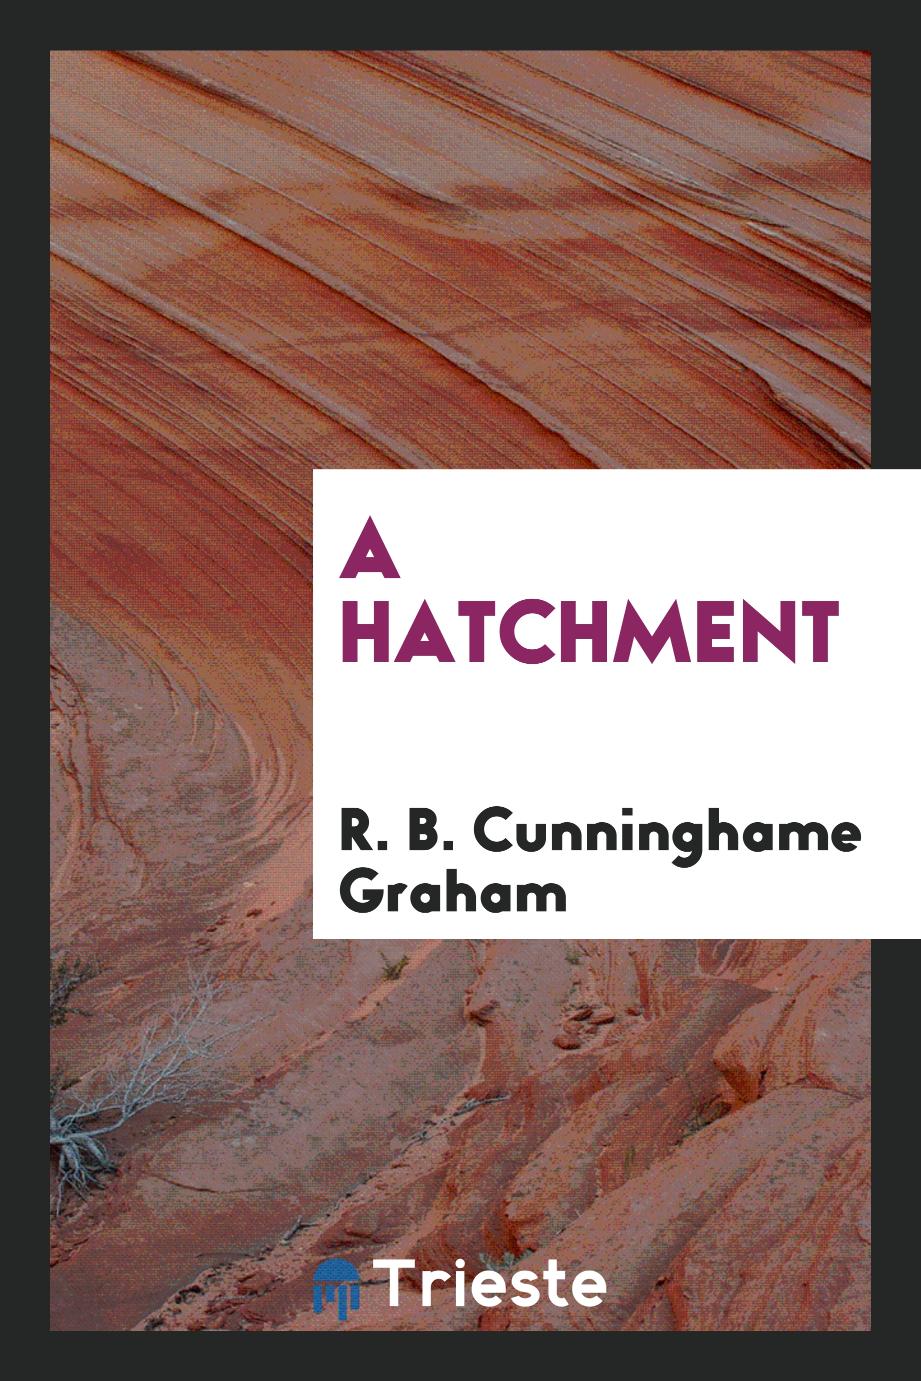 A hatchment